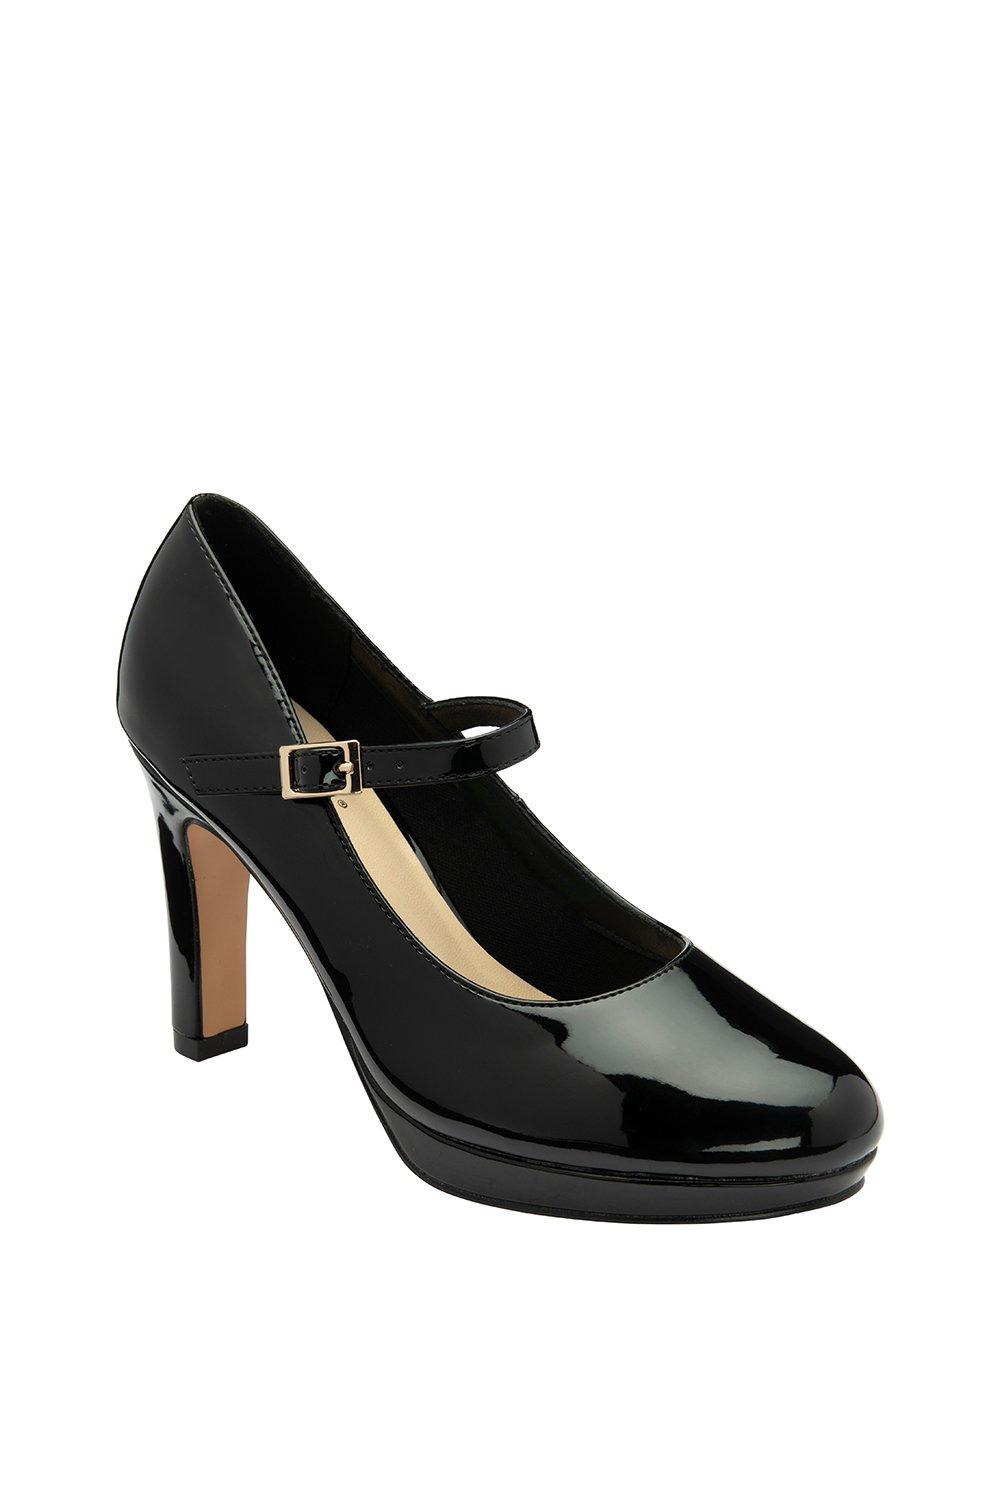 Черные лакированные туфли Мэри-Джейн 'Madison' Lotus, черный туфли лодочки женские на платформе классические свадебные туфли мэри джейн средний каблук черные белые 2021